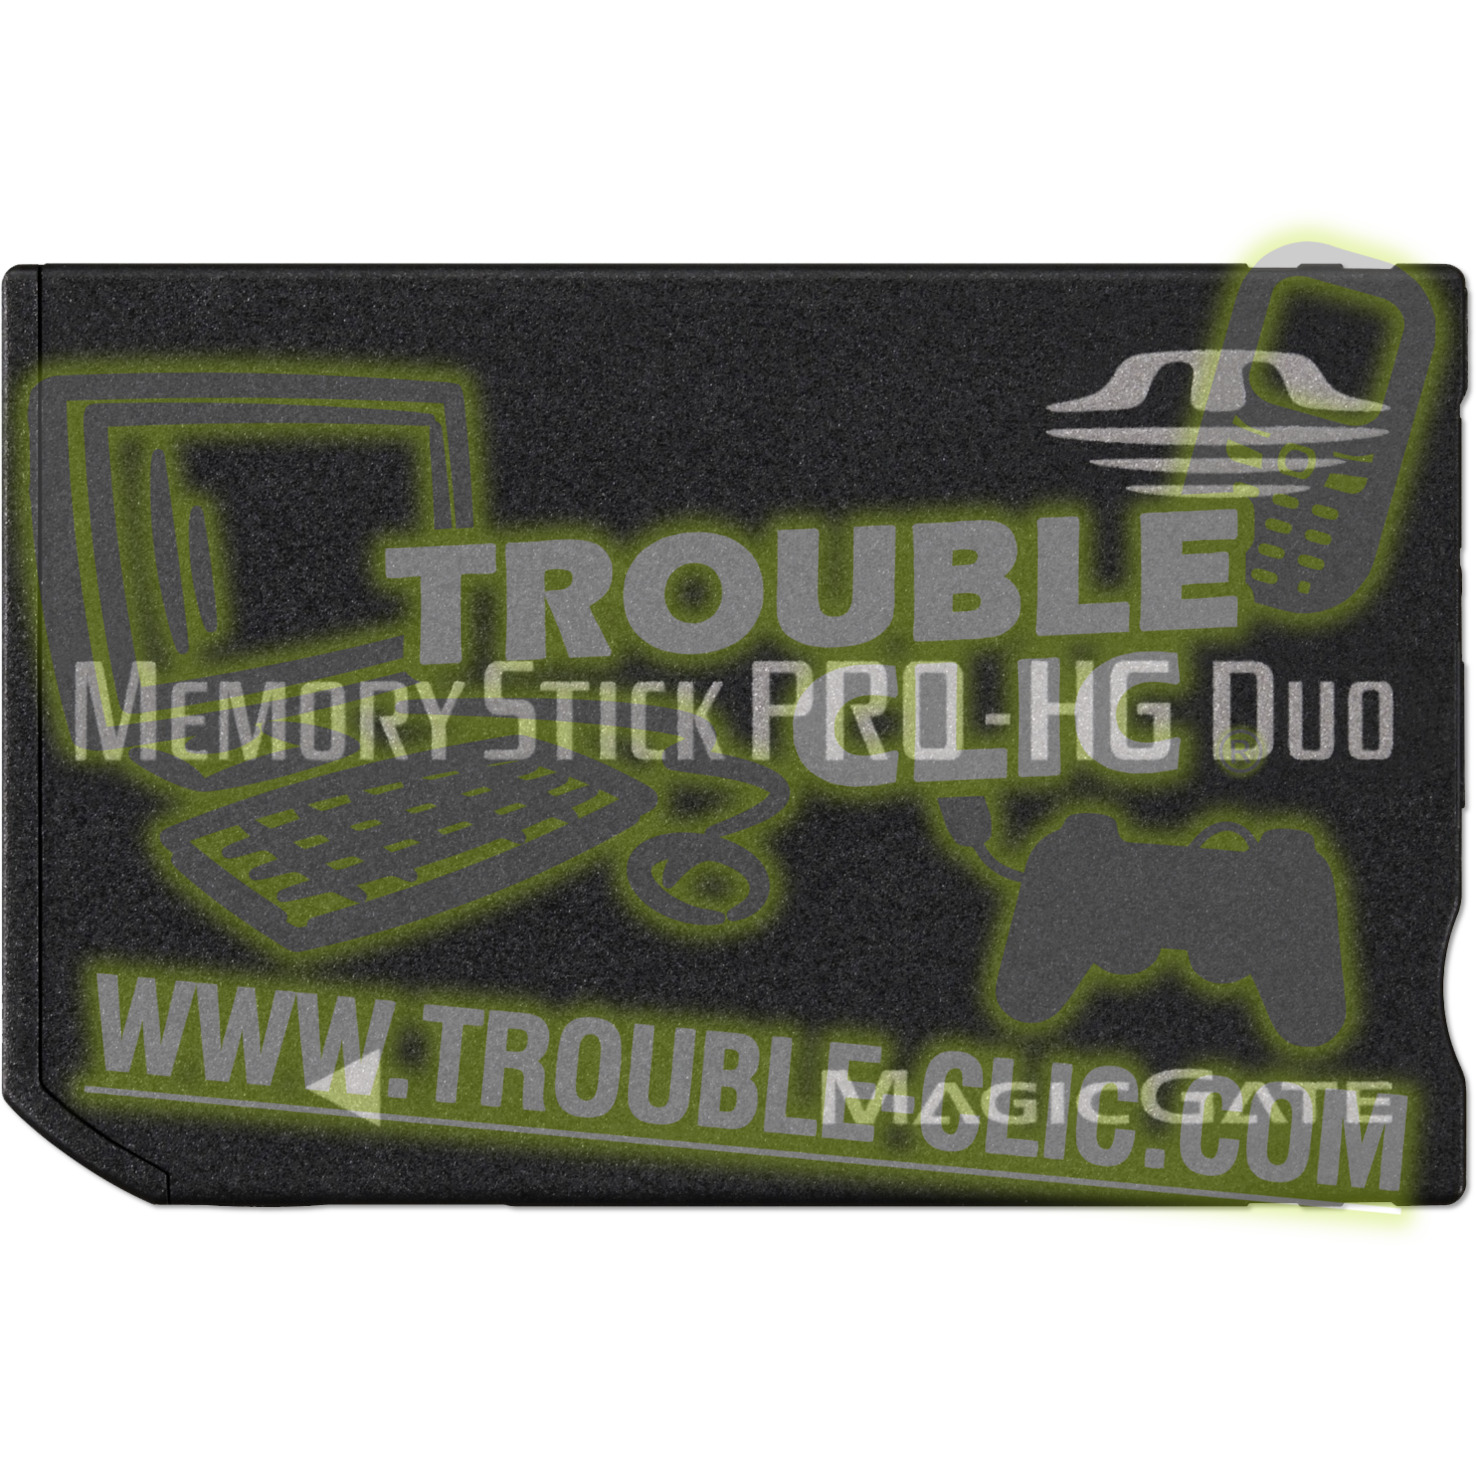 Acheter pour réparer Micro SD 64 Go [ Trouble Clic ]